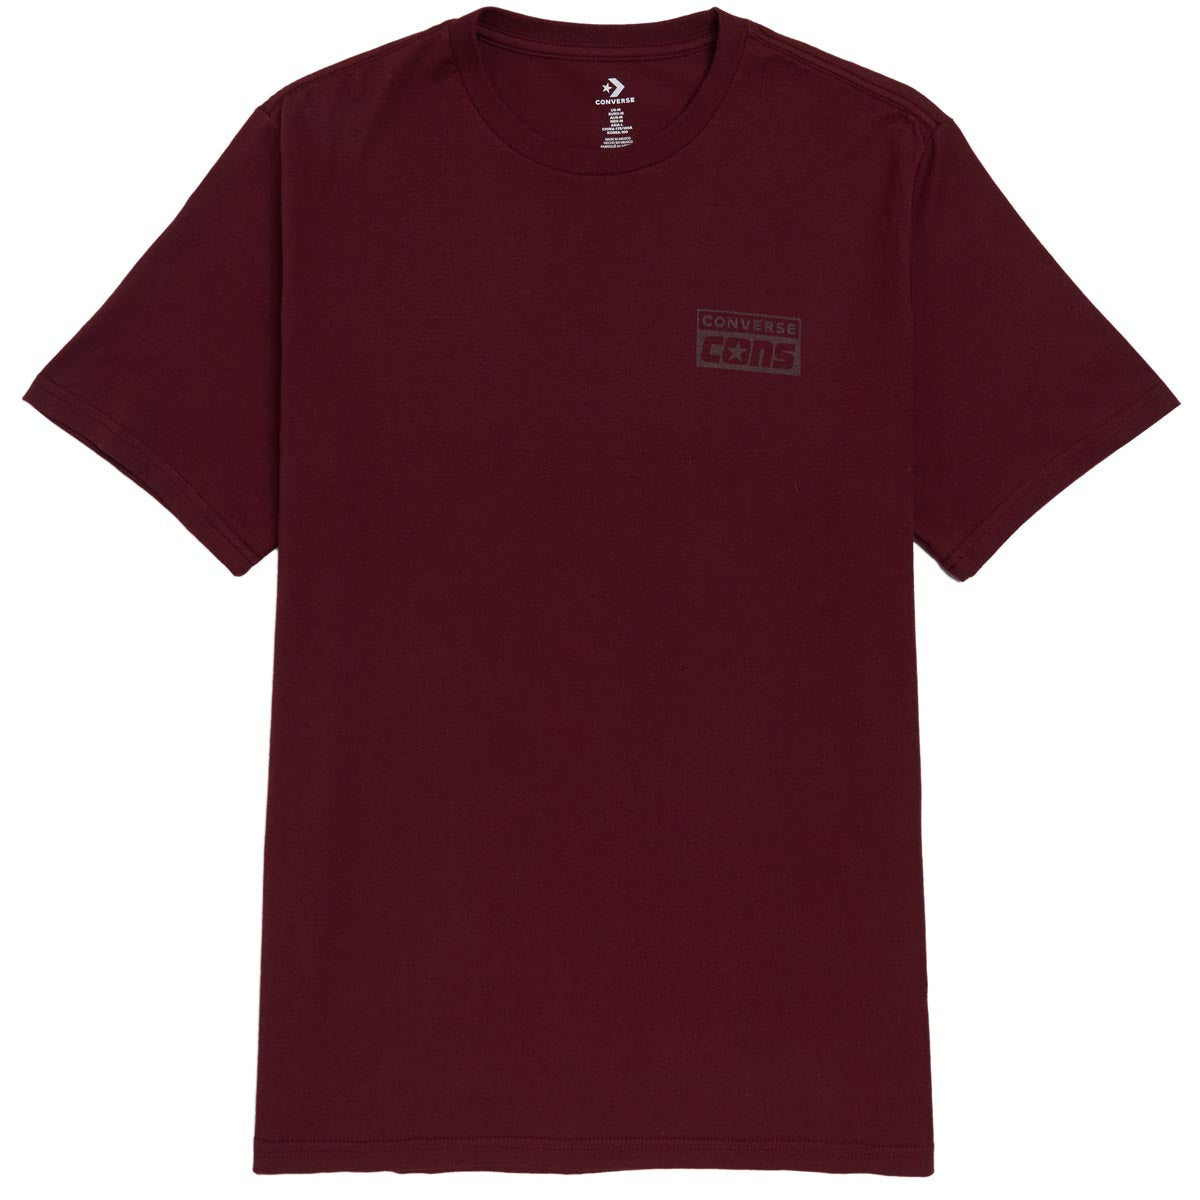 Converse Graphic T-Shirt - Deep Bordeaux image 1